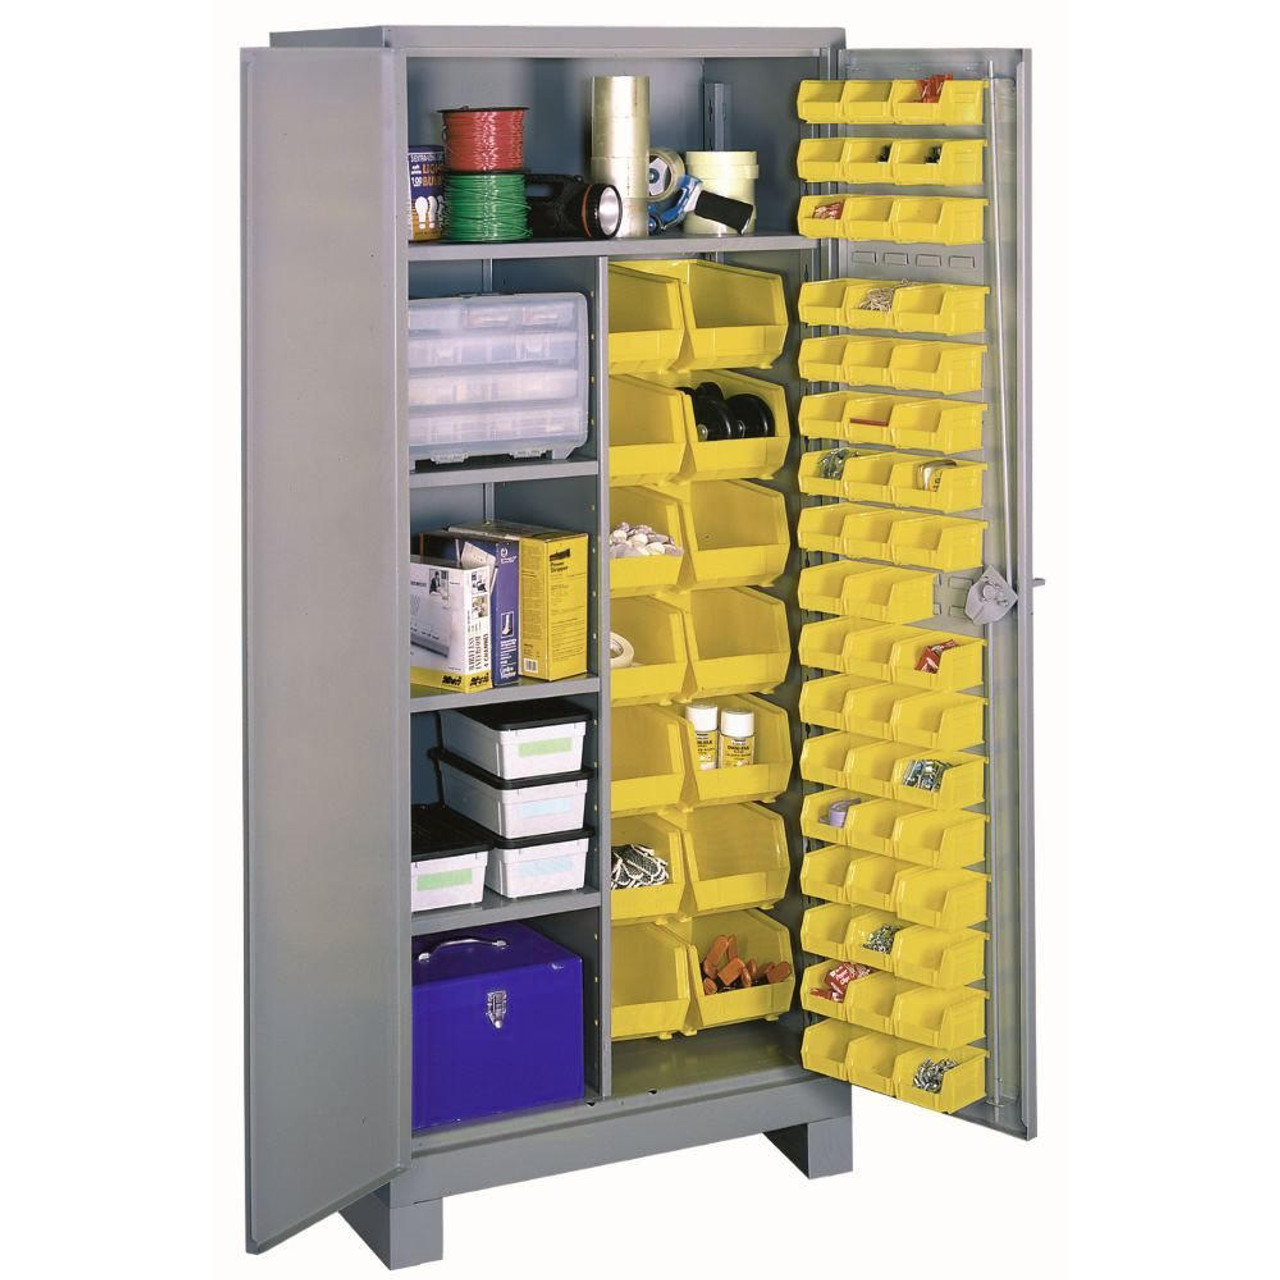 Heavy Duty All-Welded Bin Cabinets, Plastic Bin Welded Cabinet, Bin Storage  Cabinet, Security Cabinet with Bins, Plastic Bin